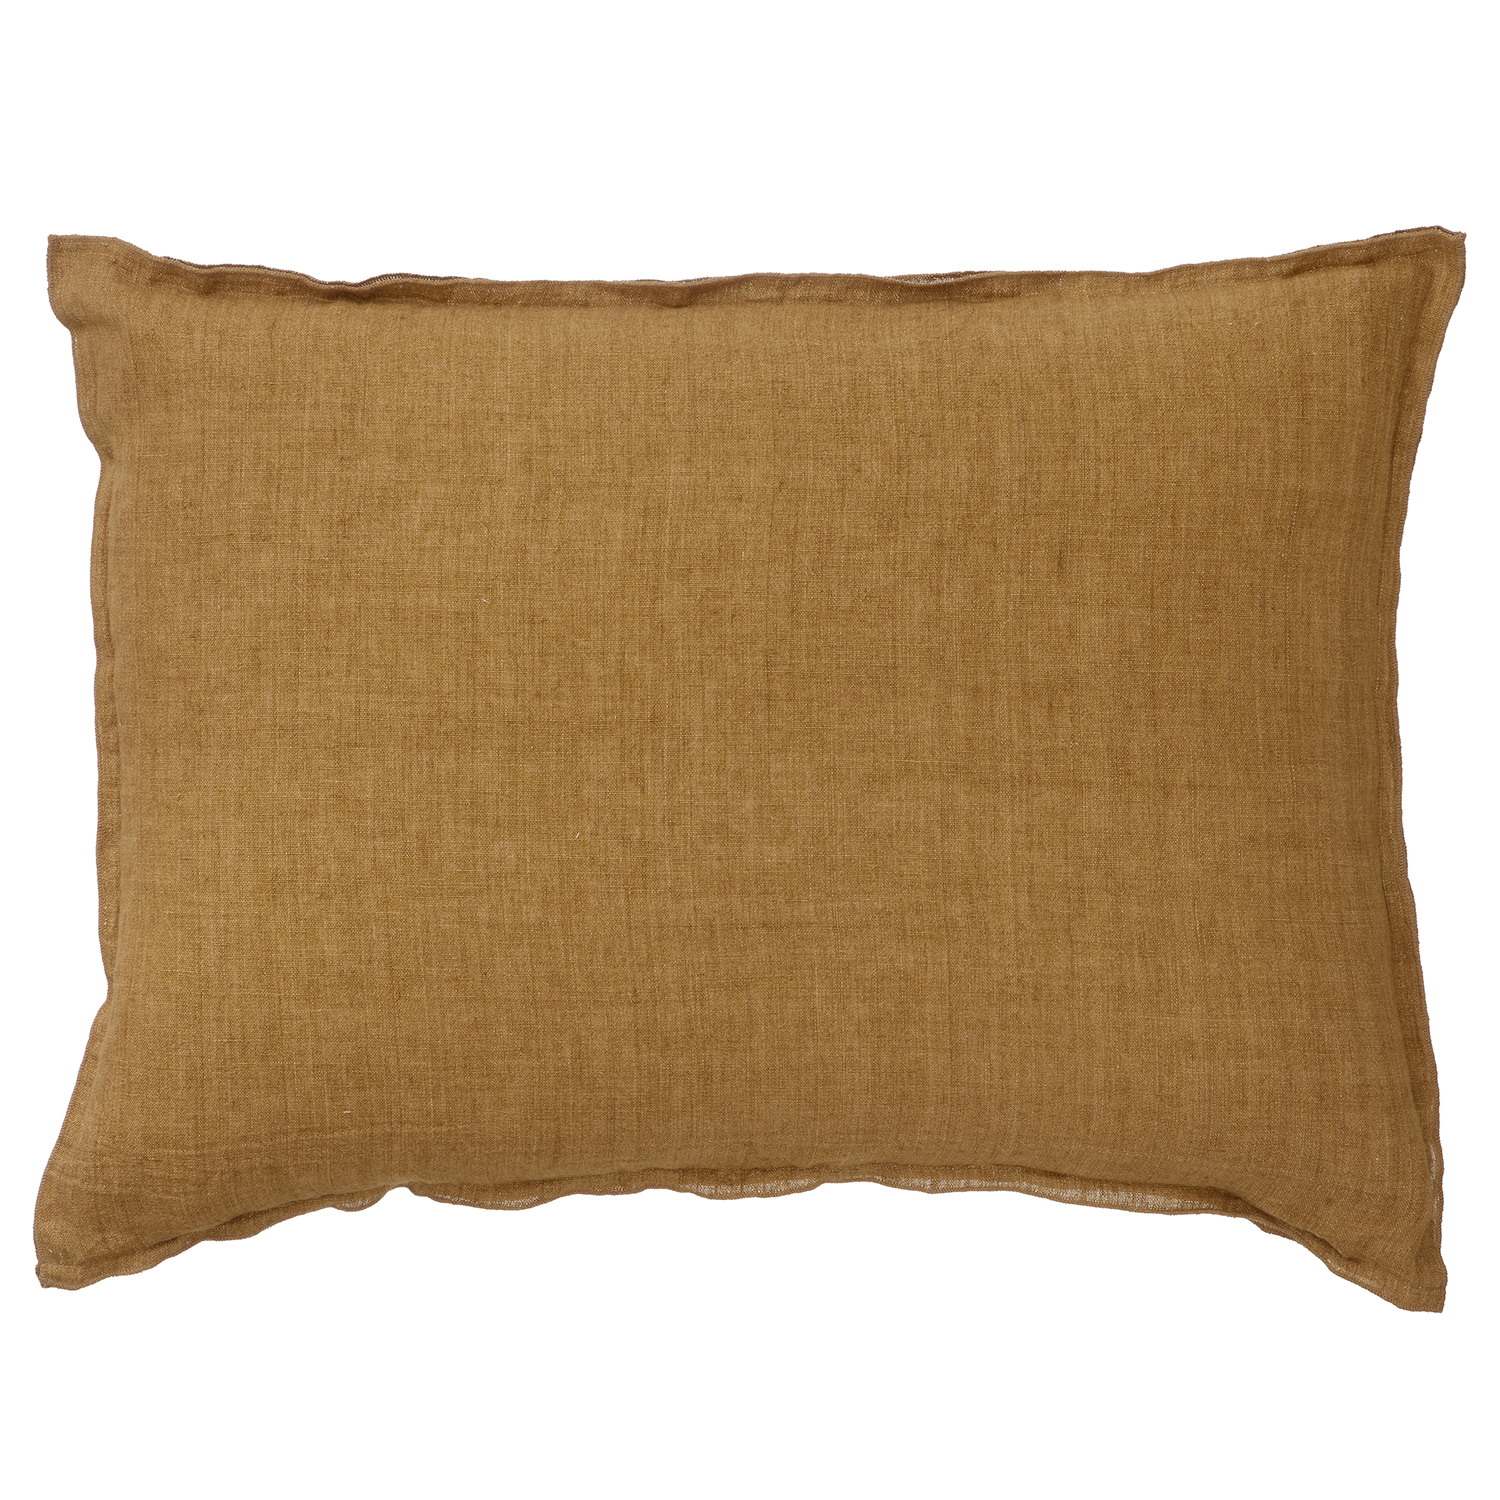 Bungalow DK Cushion Cover 50x70cm Linen Pecan